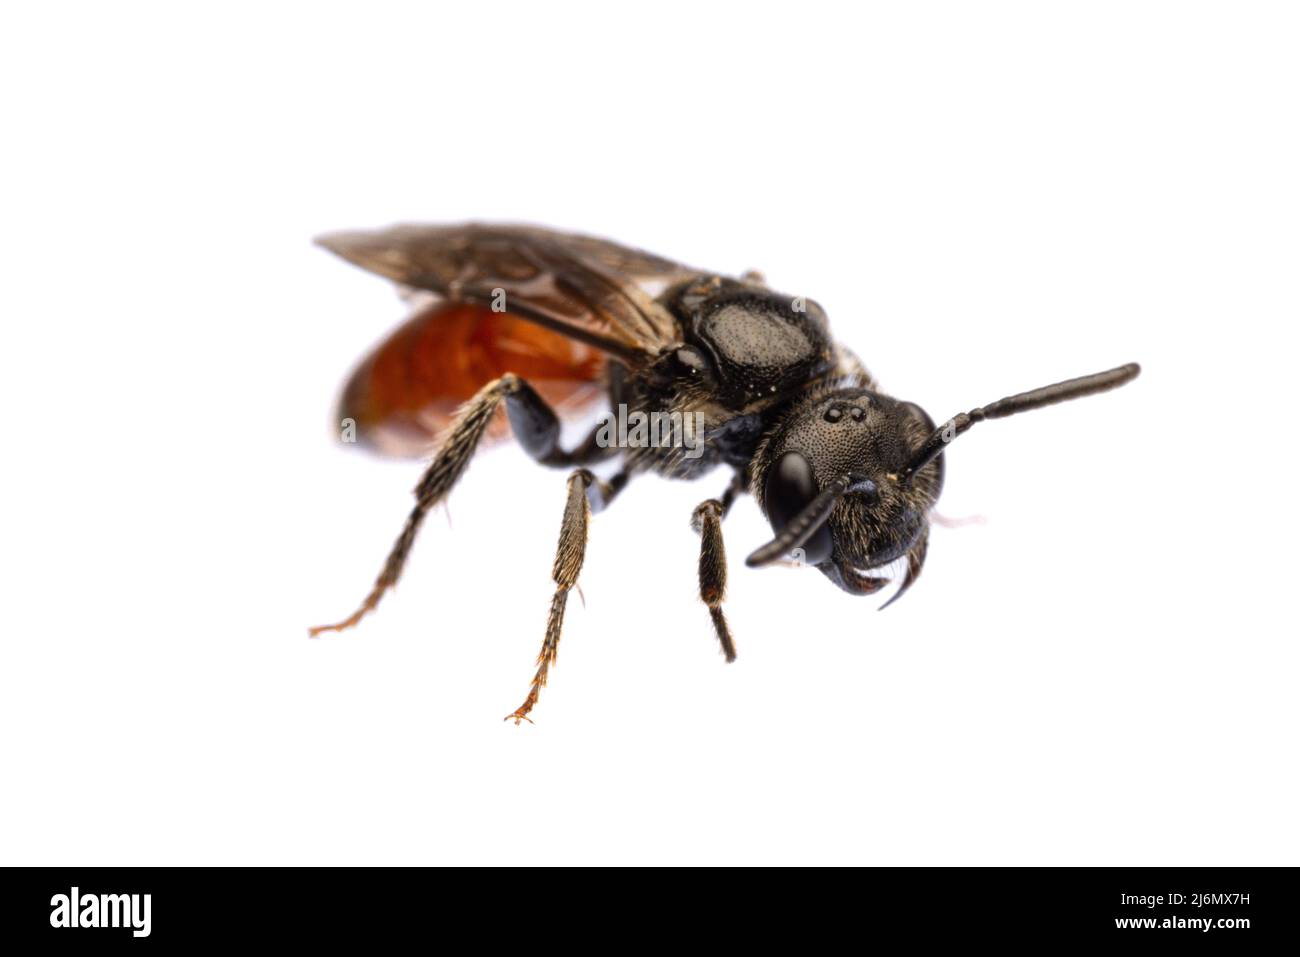 Insectes d'europe - abeilles: Vue de face diagonale de l'abeille sanguine Specodes (blutbiene allemand) isolés sur fond blanc Banque D'Images